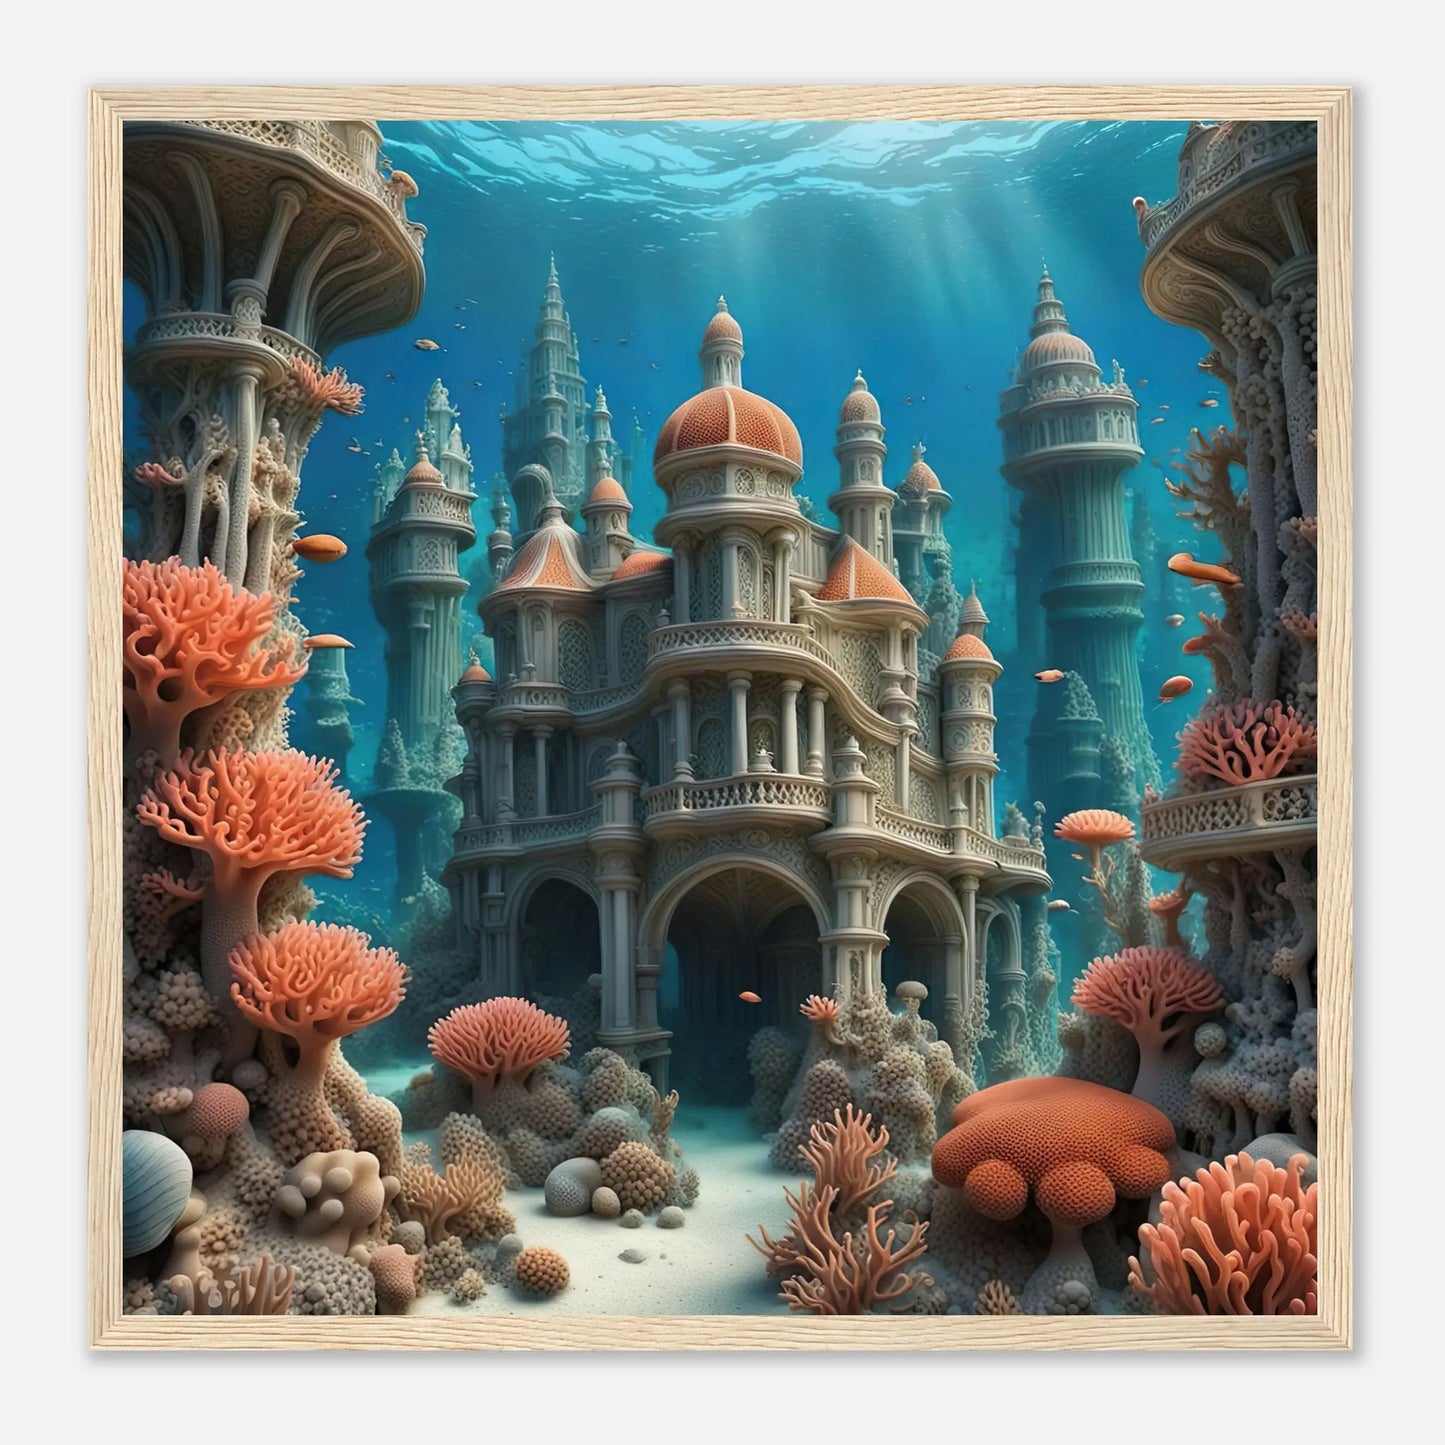 Gerahmtes Premium-Poster - Unterwasserwelt - Digitaler Stil, KI-Kunst - RolConArt, Unterwasserlandschaften, 50x50-cm-20x20-Holzrahmen